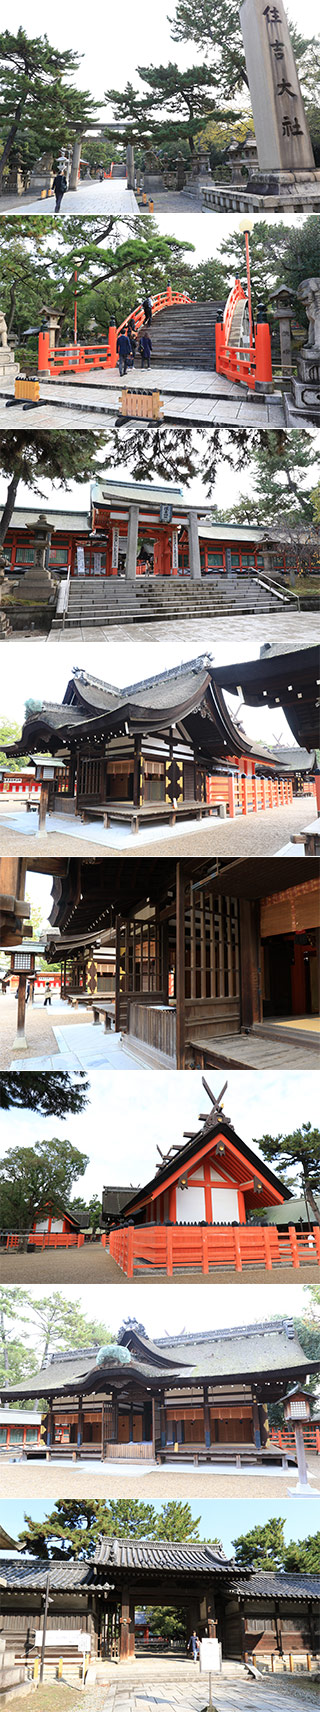 Sumiyoshi Grand Shrine